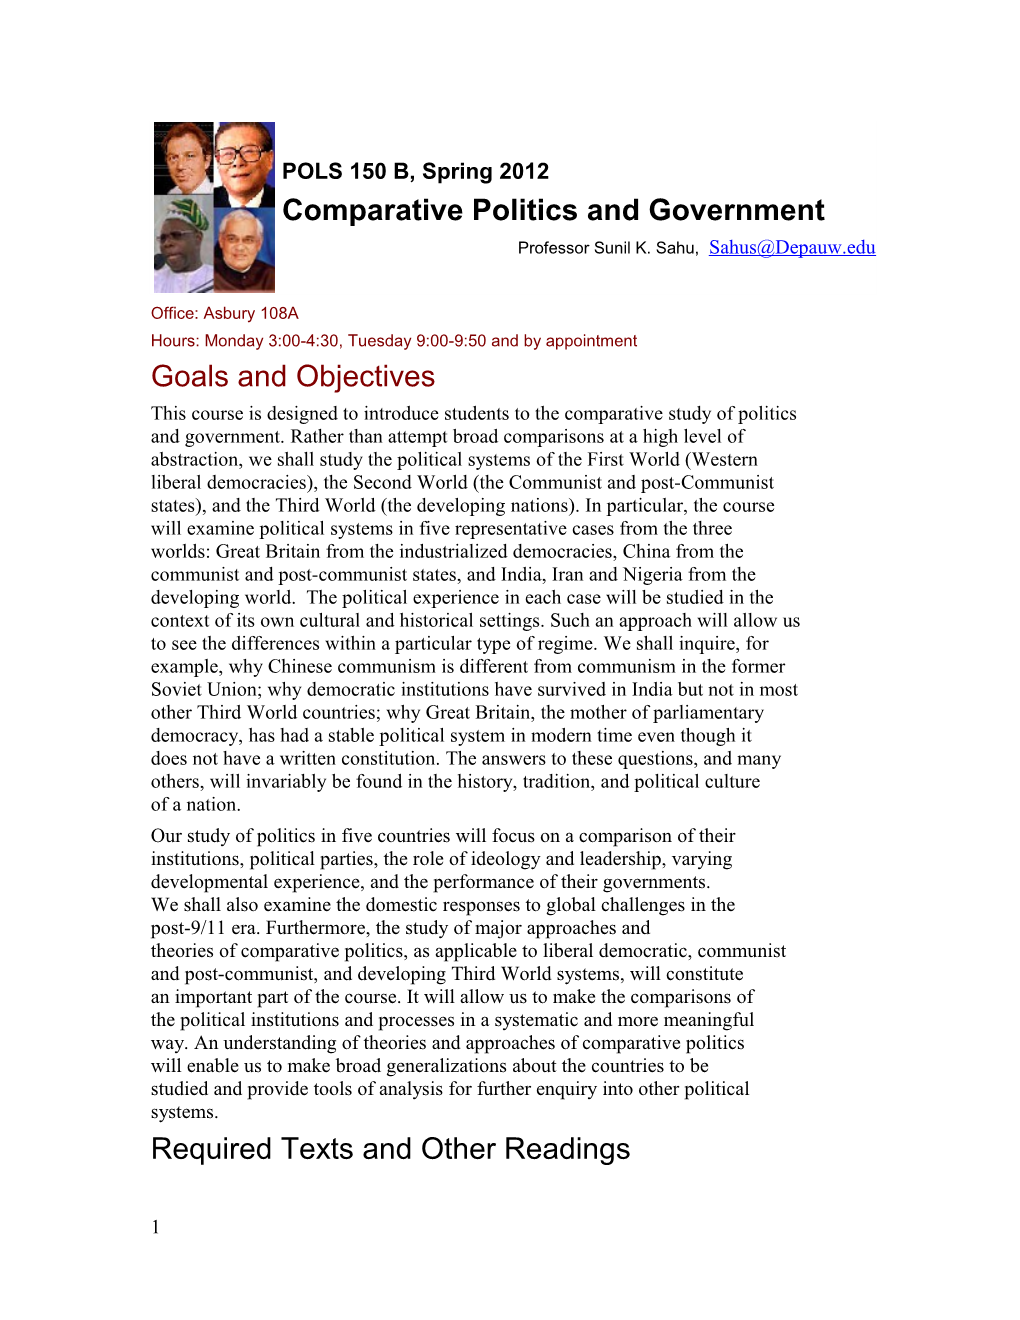 Comparative Politics and Government